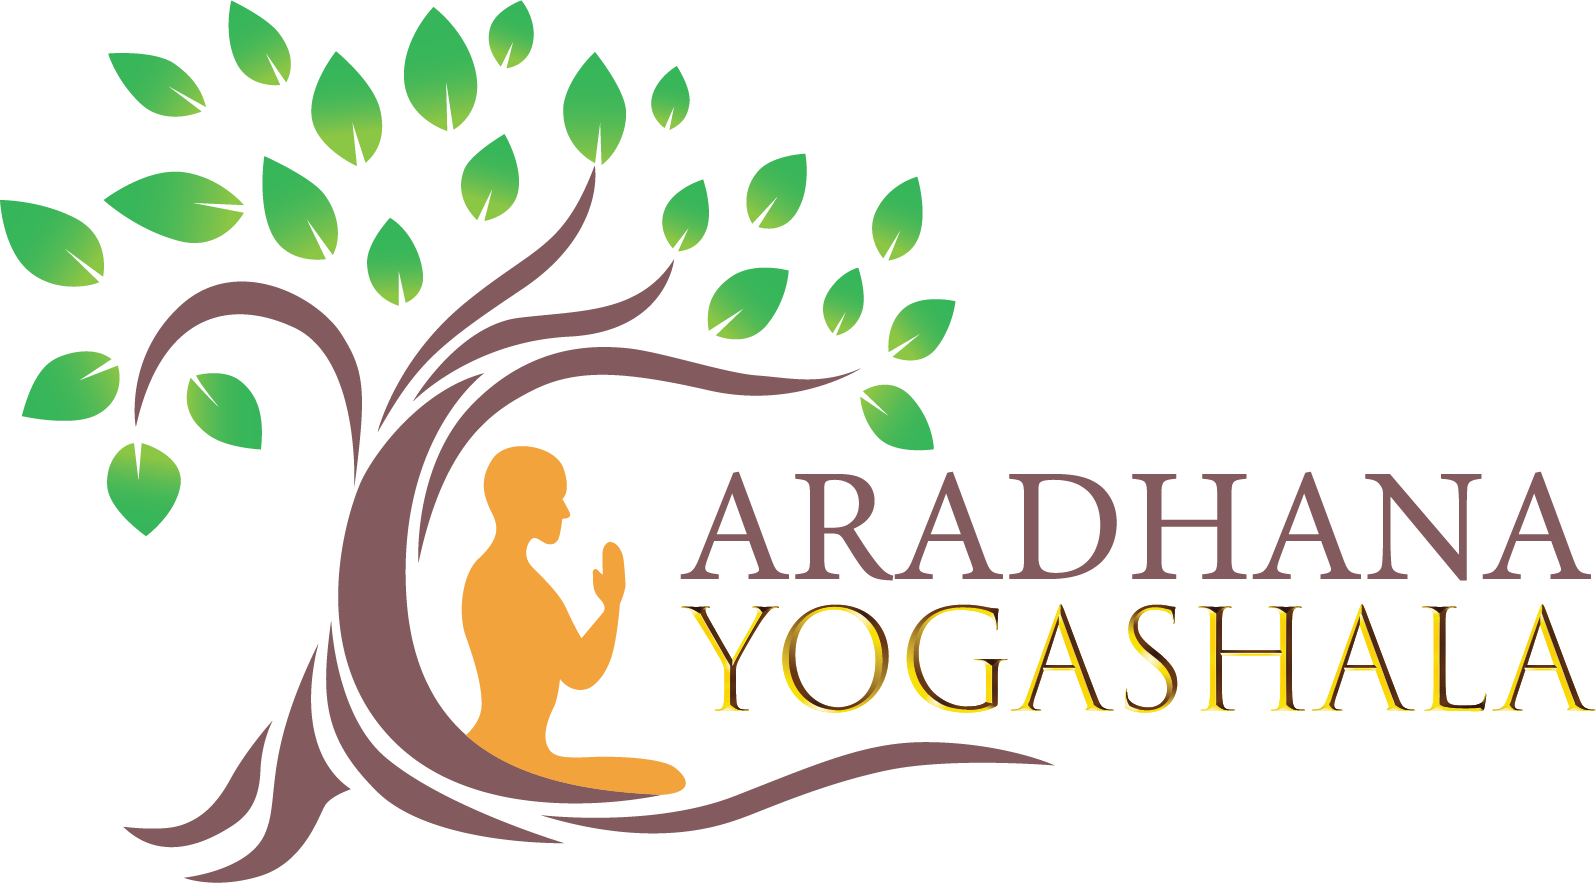 Image Of Aradhana Yogashala Logo